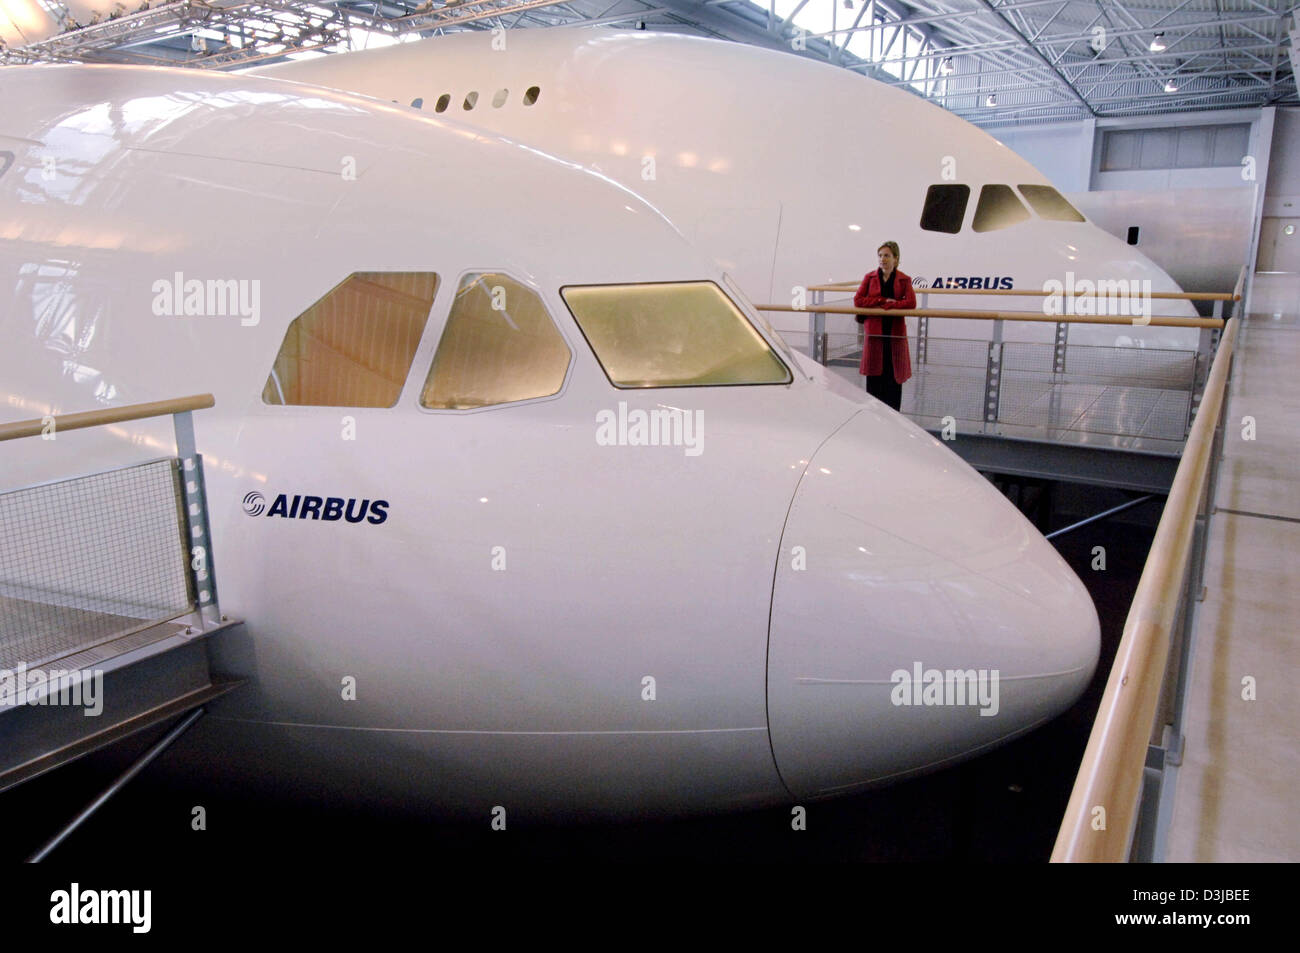 Afp) - une femme dans un manteau rouge ressemble à un grand modèle  (maquette) de l'Airbus A340 (avant) au siège social d'Airbus à Toulouse,  France, 20 avril 2005. Dans l'arrière-plan est une